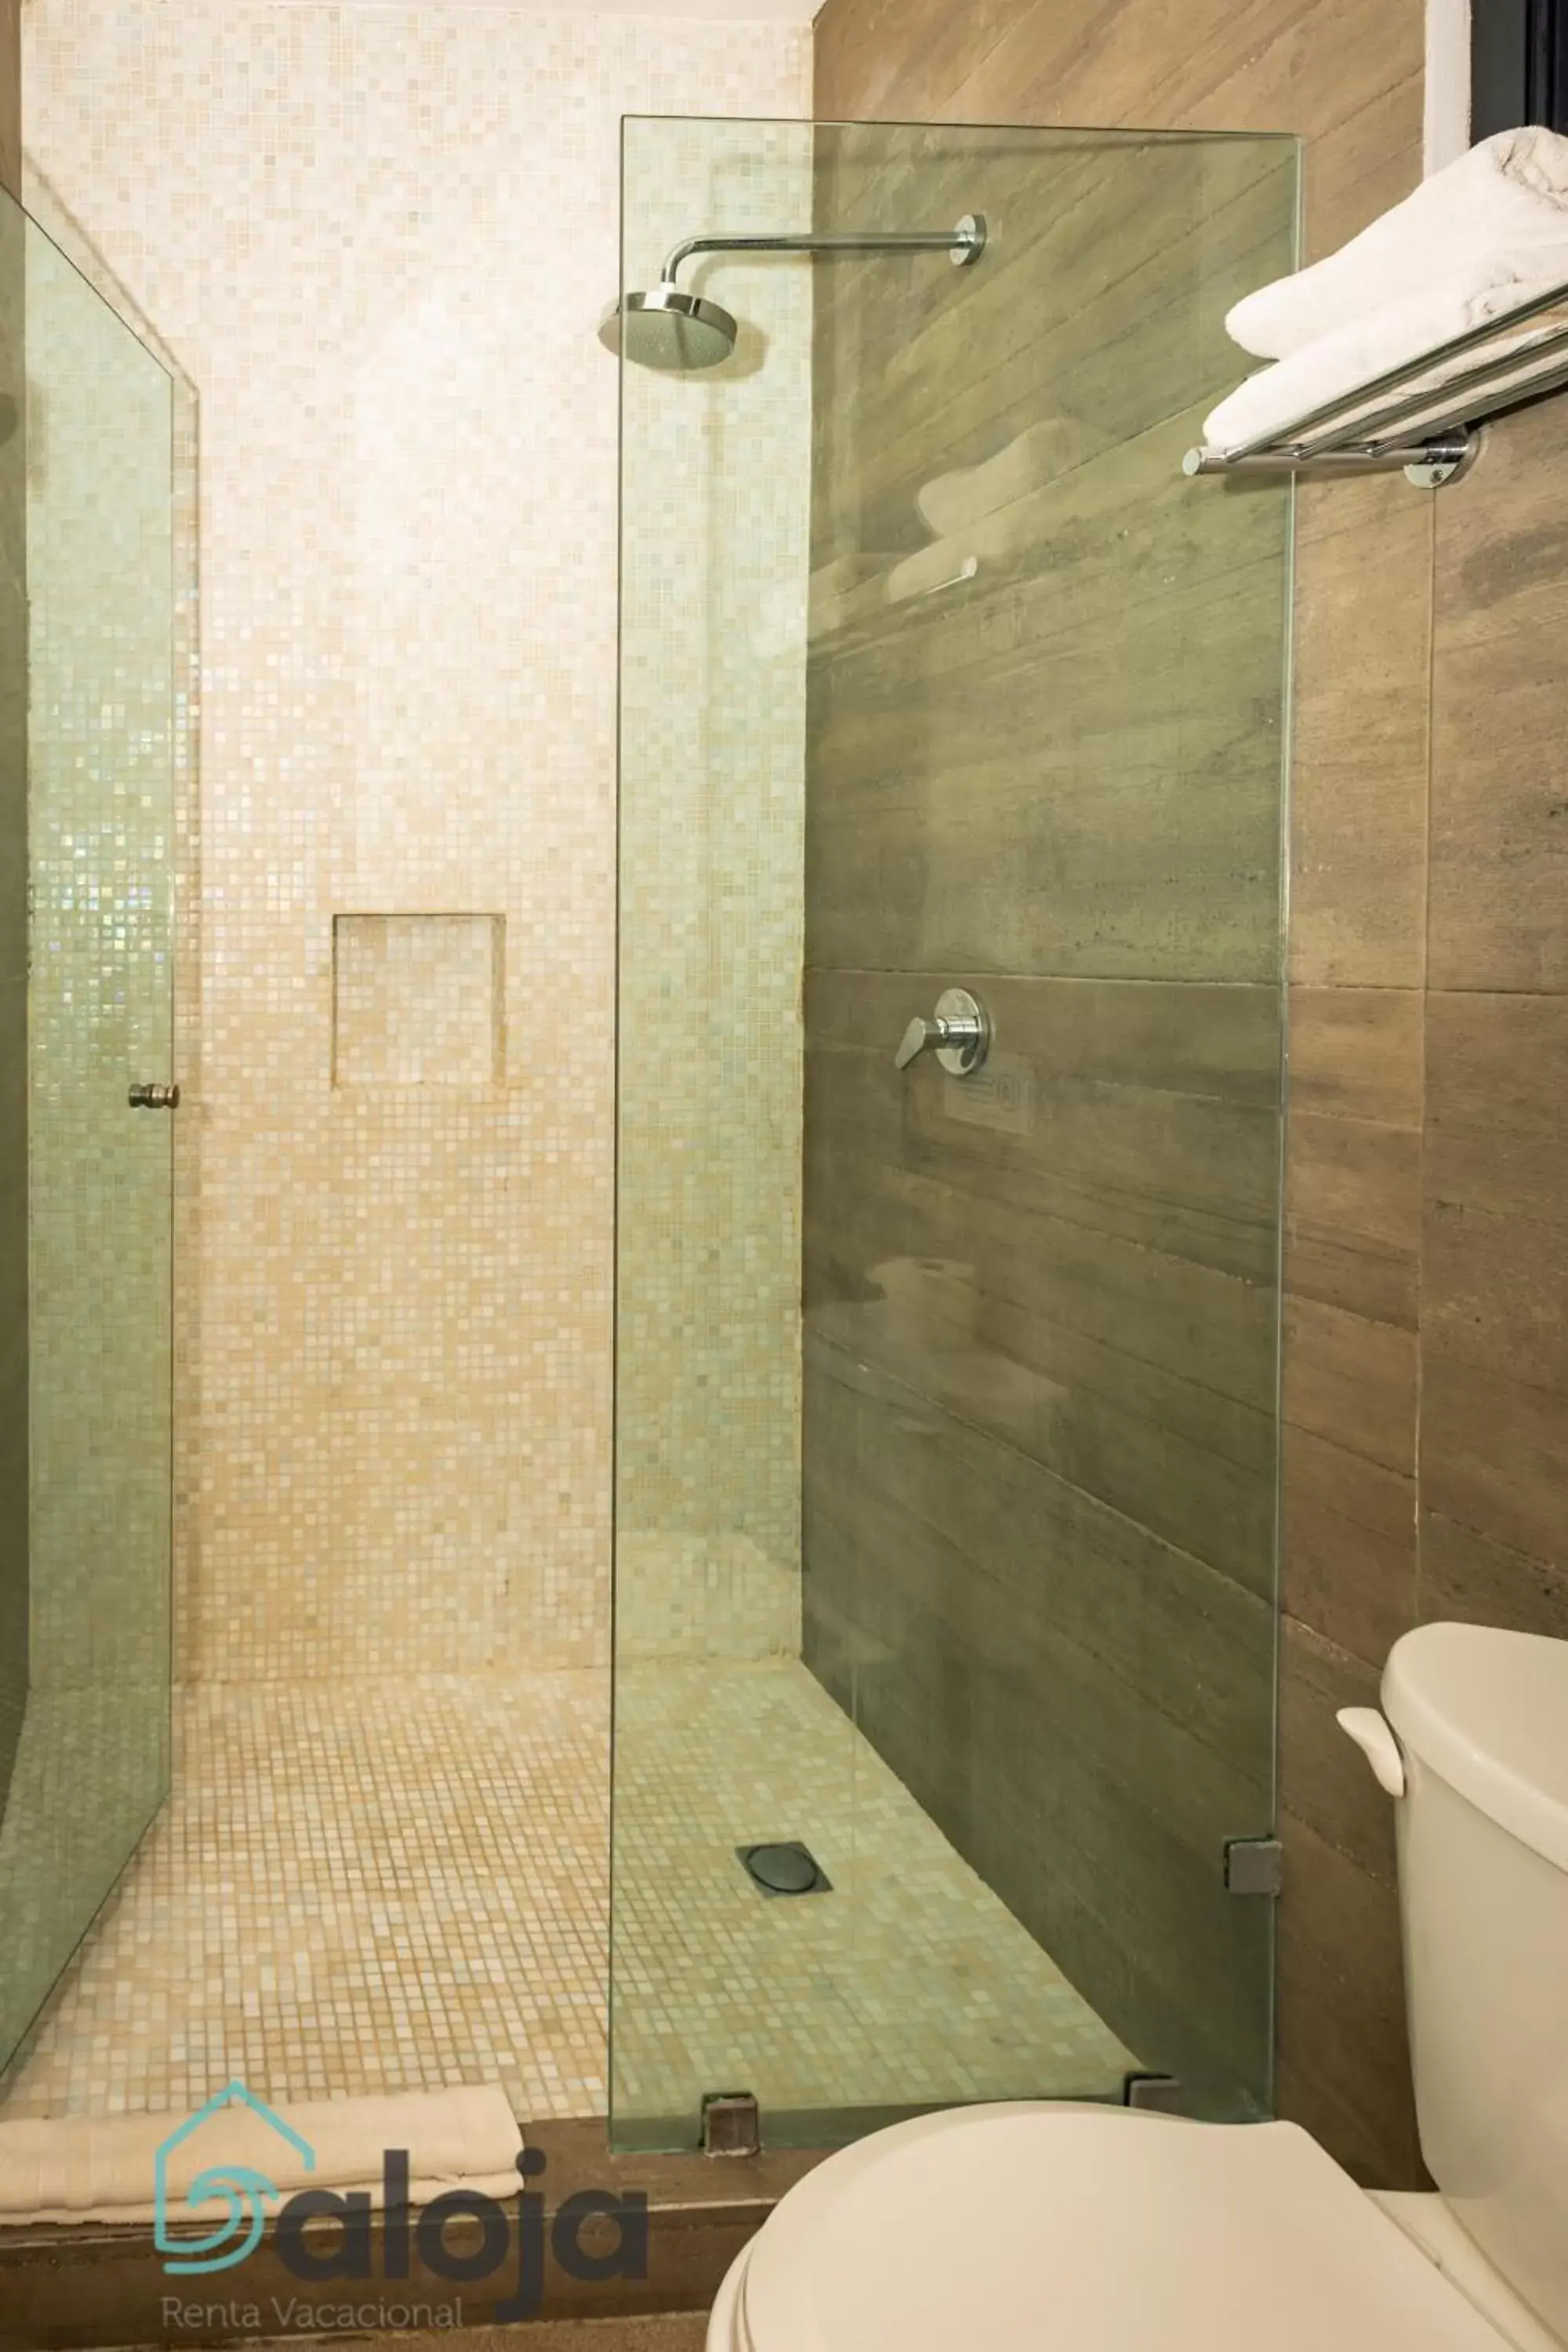 Bathroom in Hotel Zendero Tulum